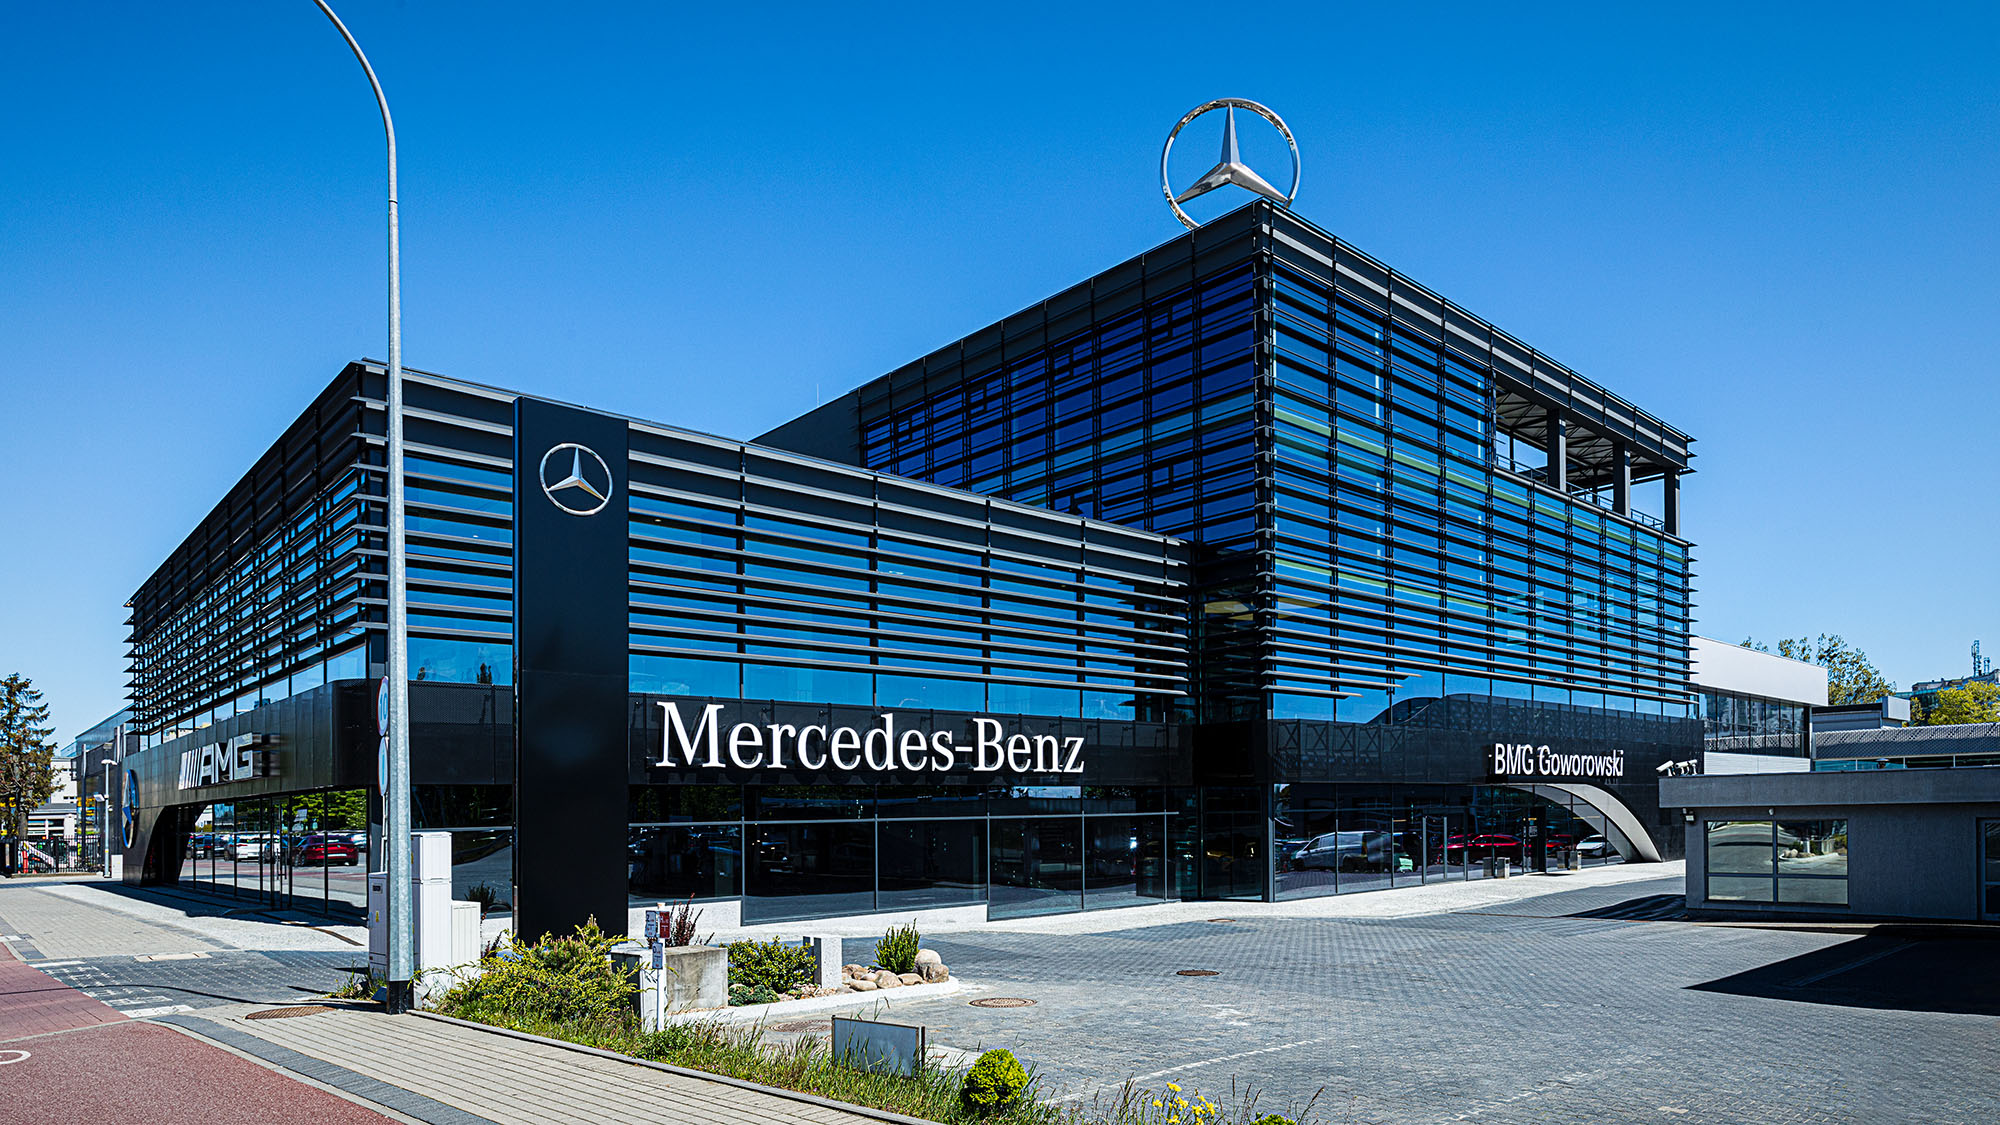  Największy salon Mercedesa w Polsce jest w Gdyni